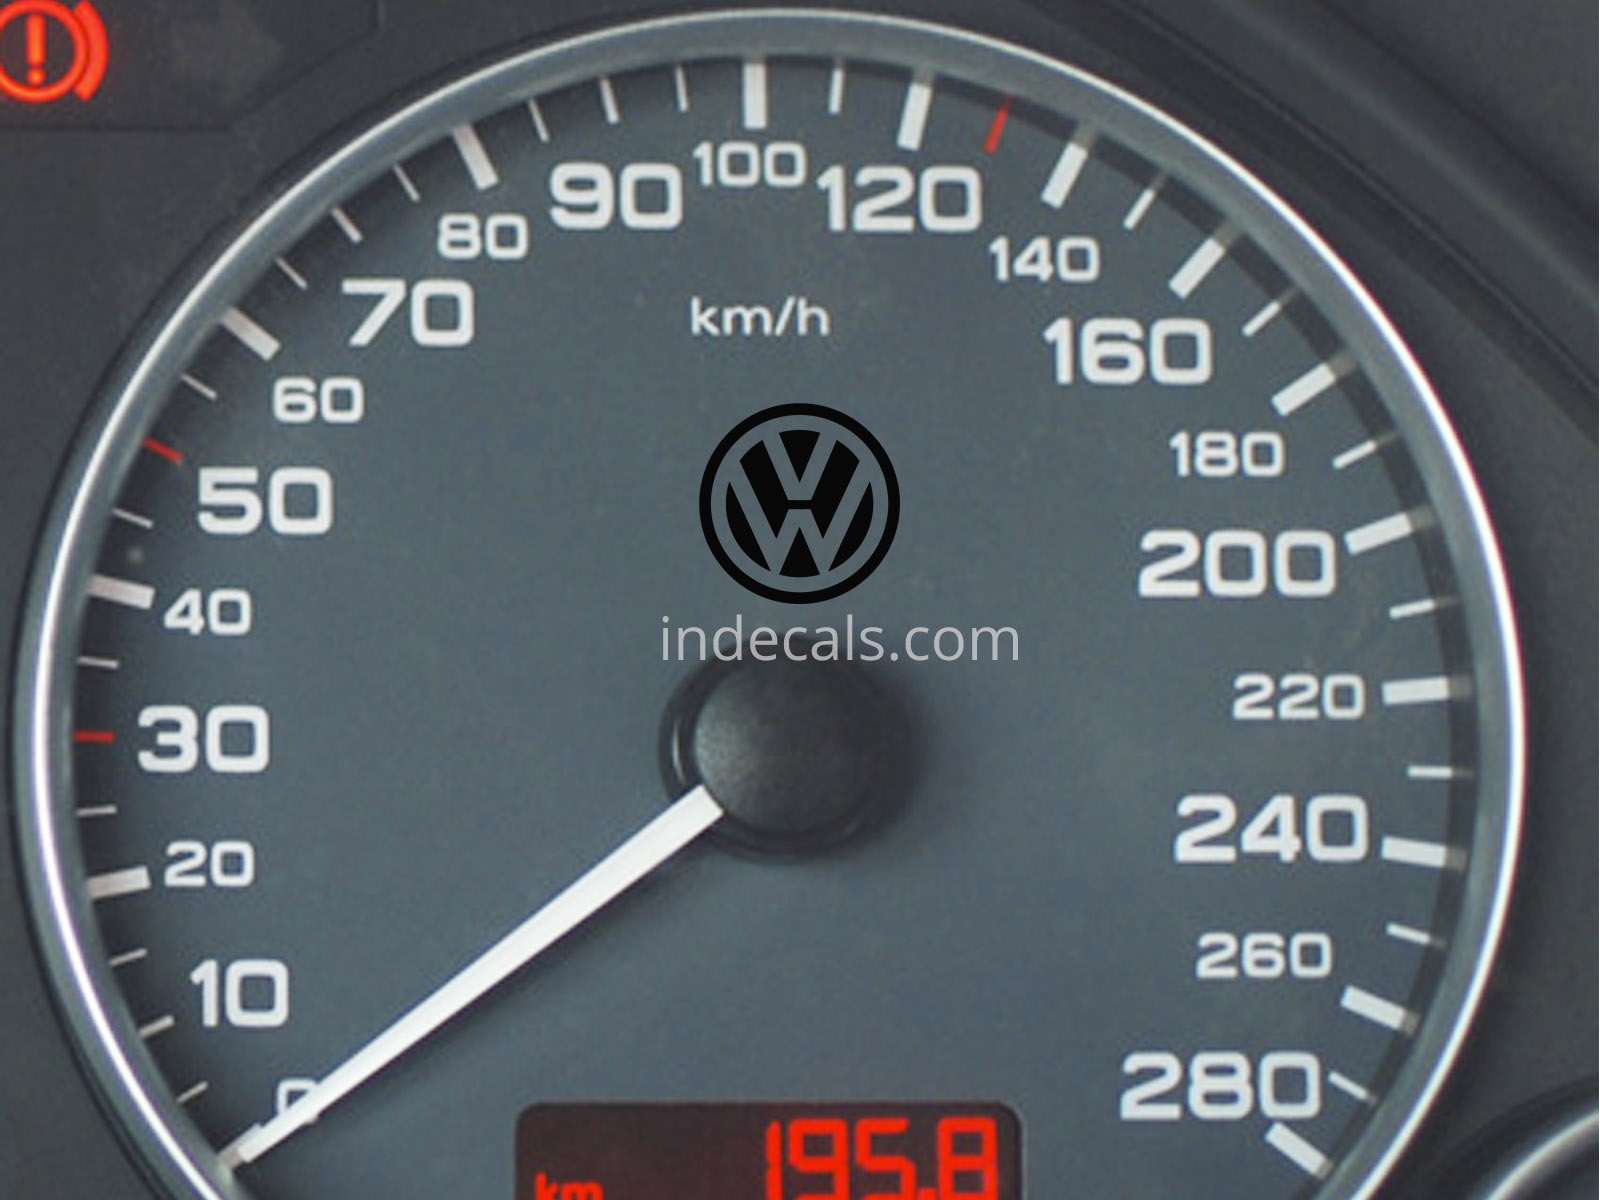 3 x Volkswagen Stickers for Speedometer - Black